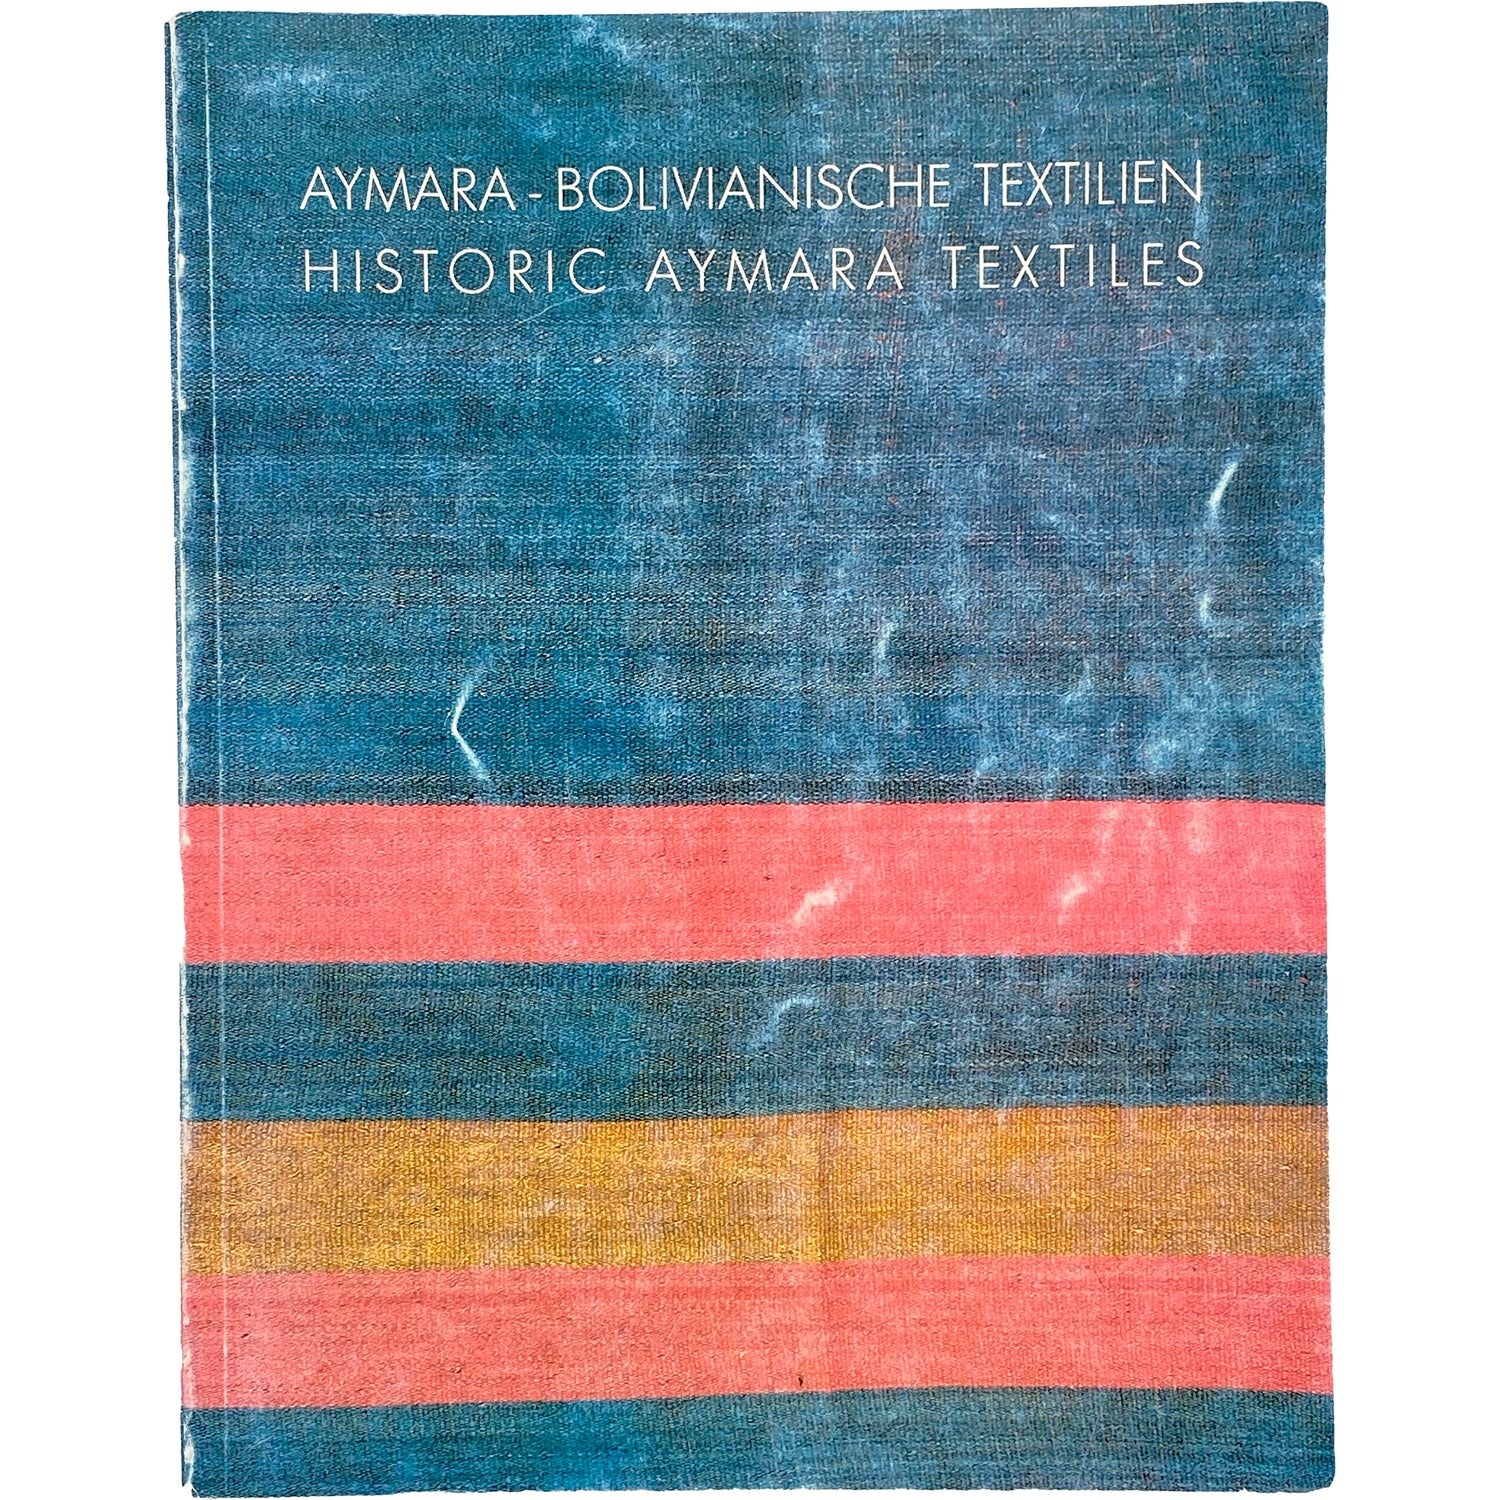 HISTORIC AYMARA TEXTILES